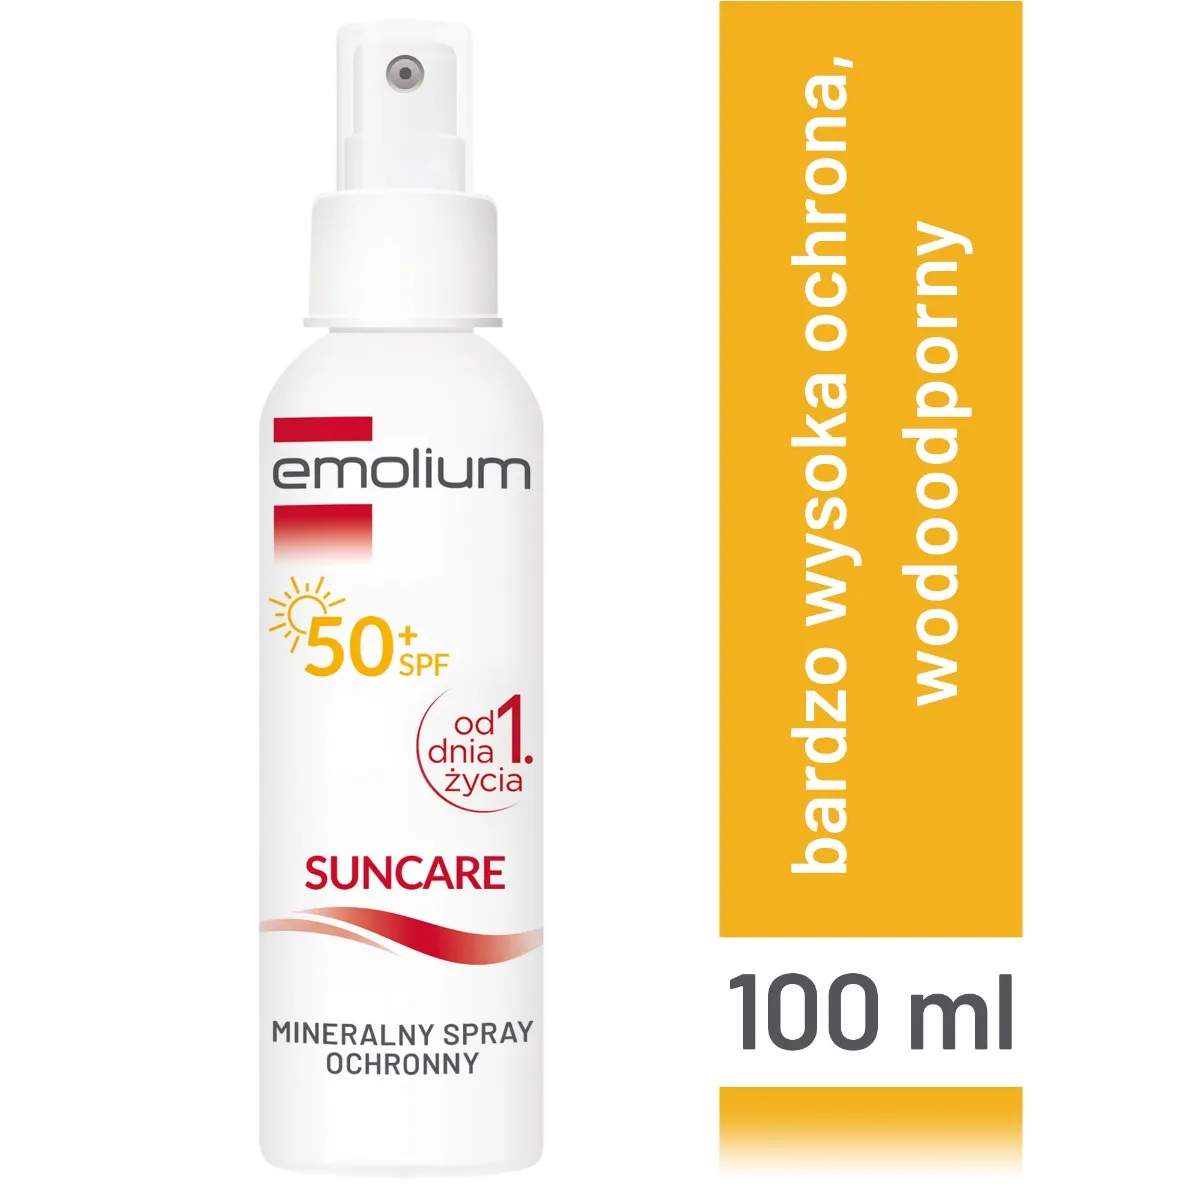 Emolium Suncare, mineralny spray ochronny SPF 50+, 100 ml